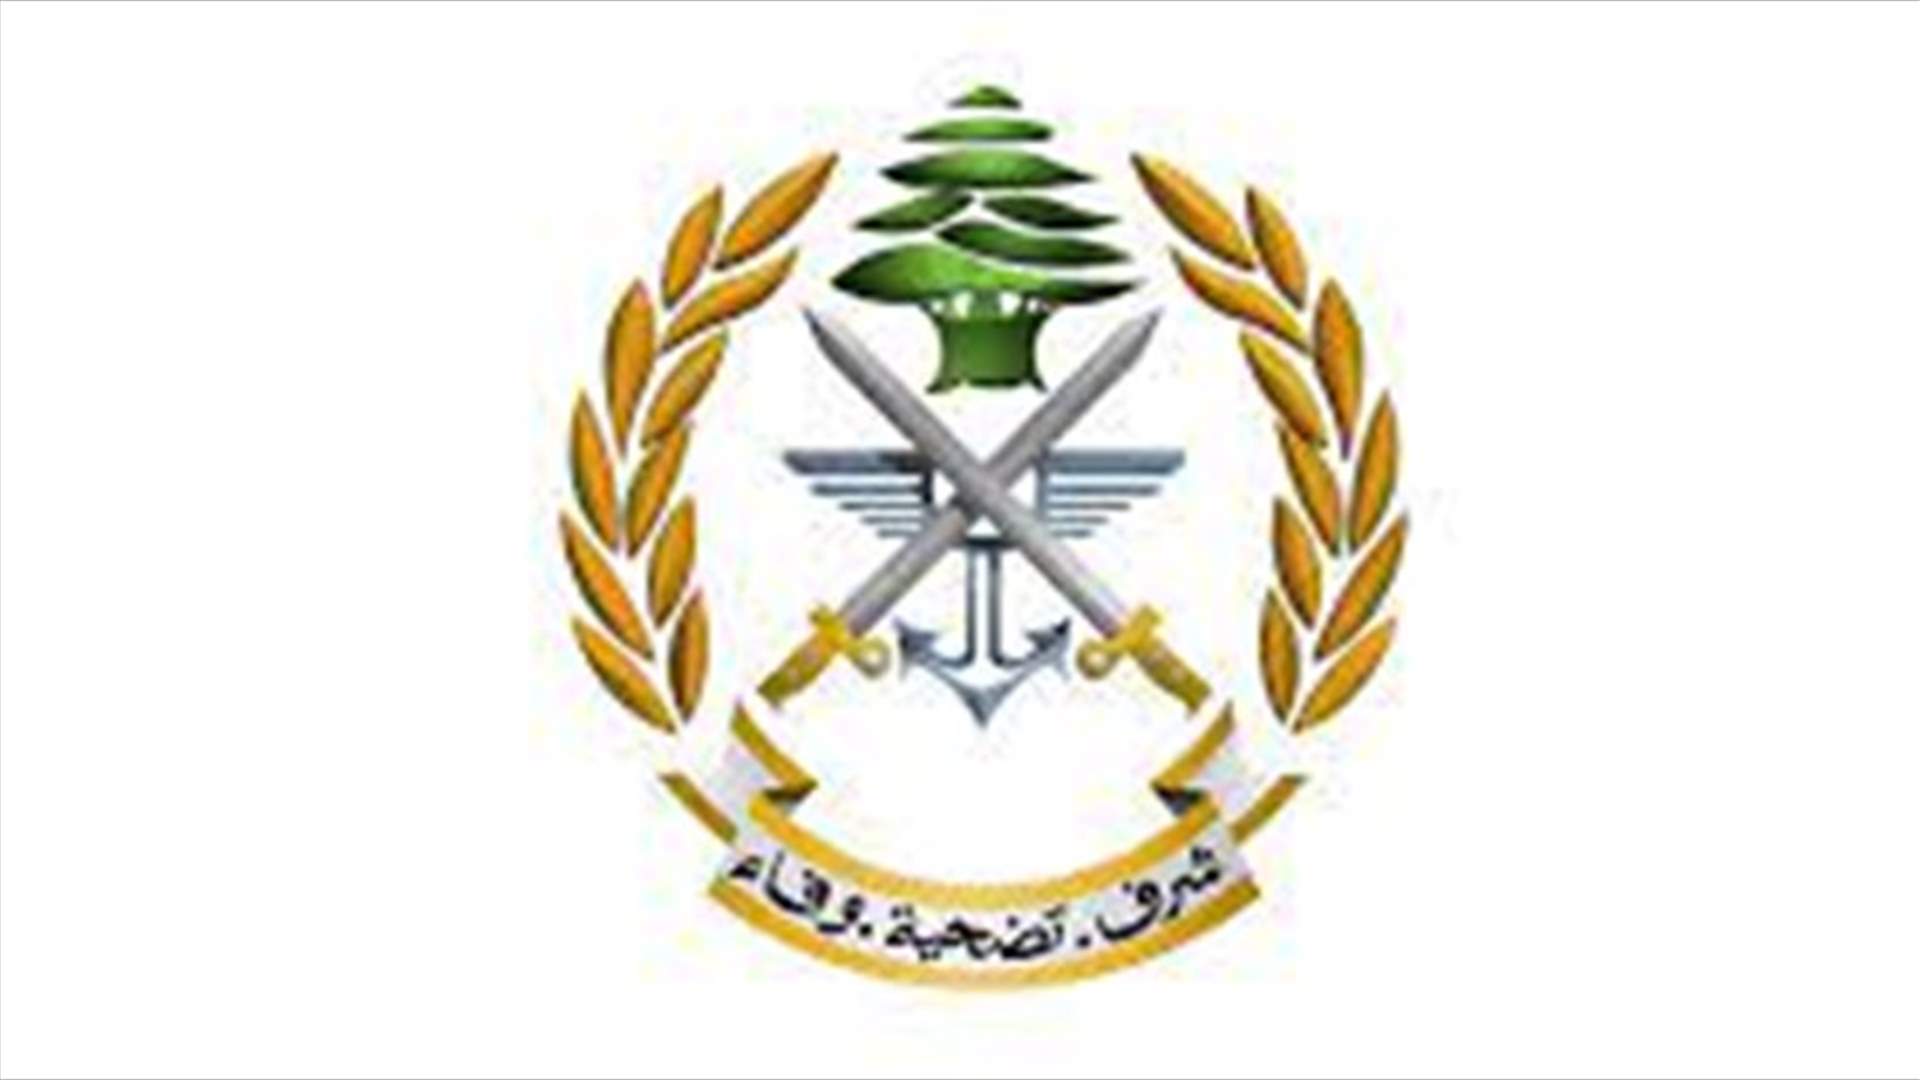 الجيش: الجانب اللبناني تطرق خلال الاجتماع الثلاثي في الناقورة إلى الاعتداءات الإسرائيلية